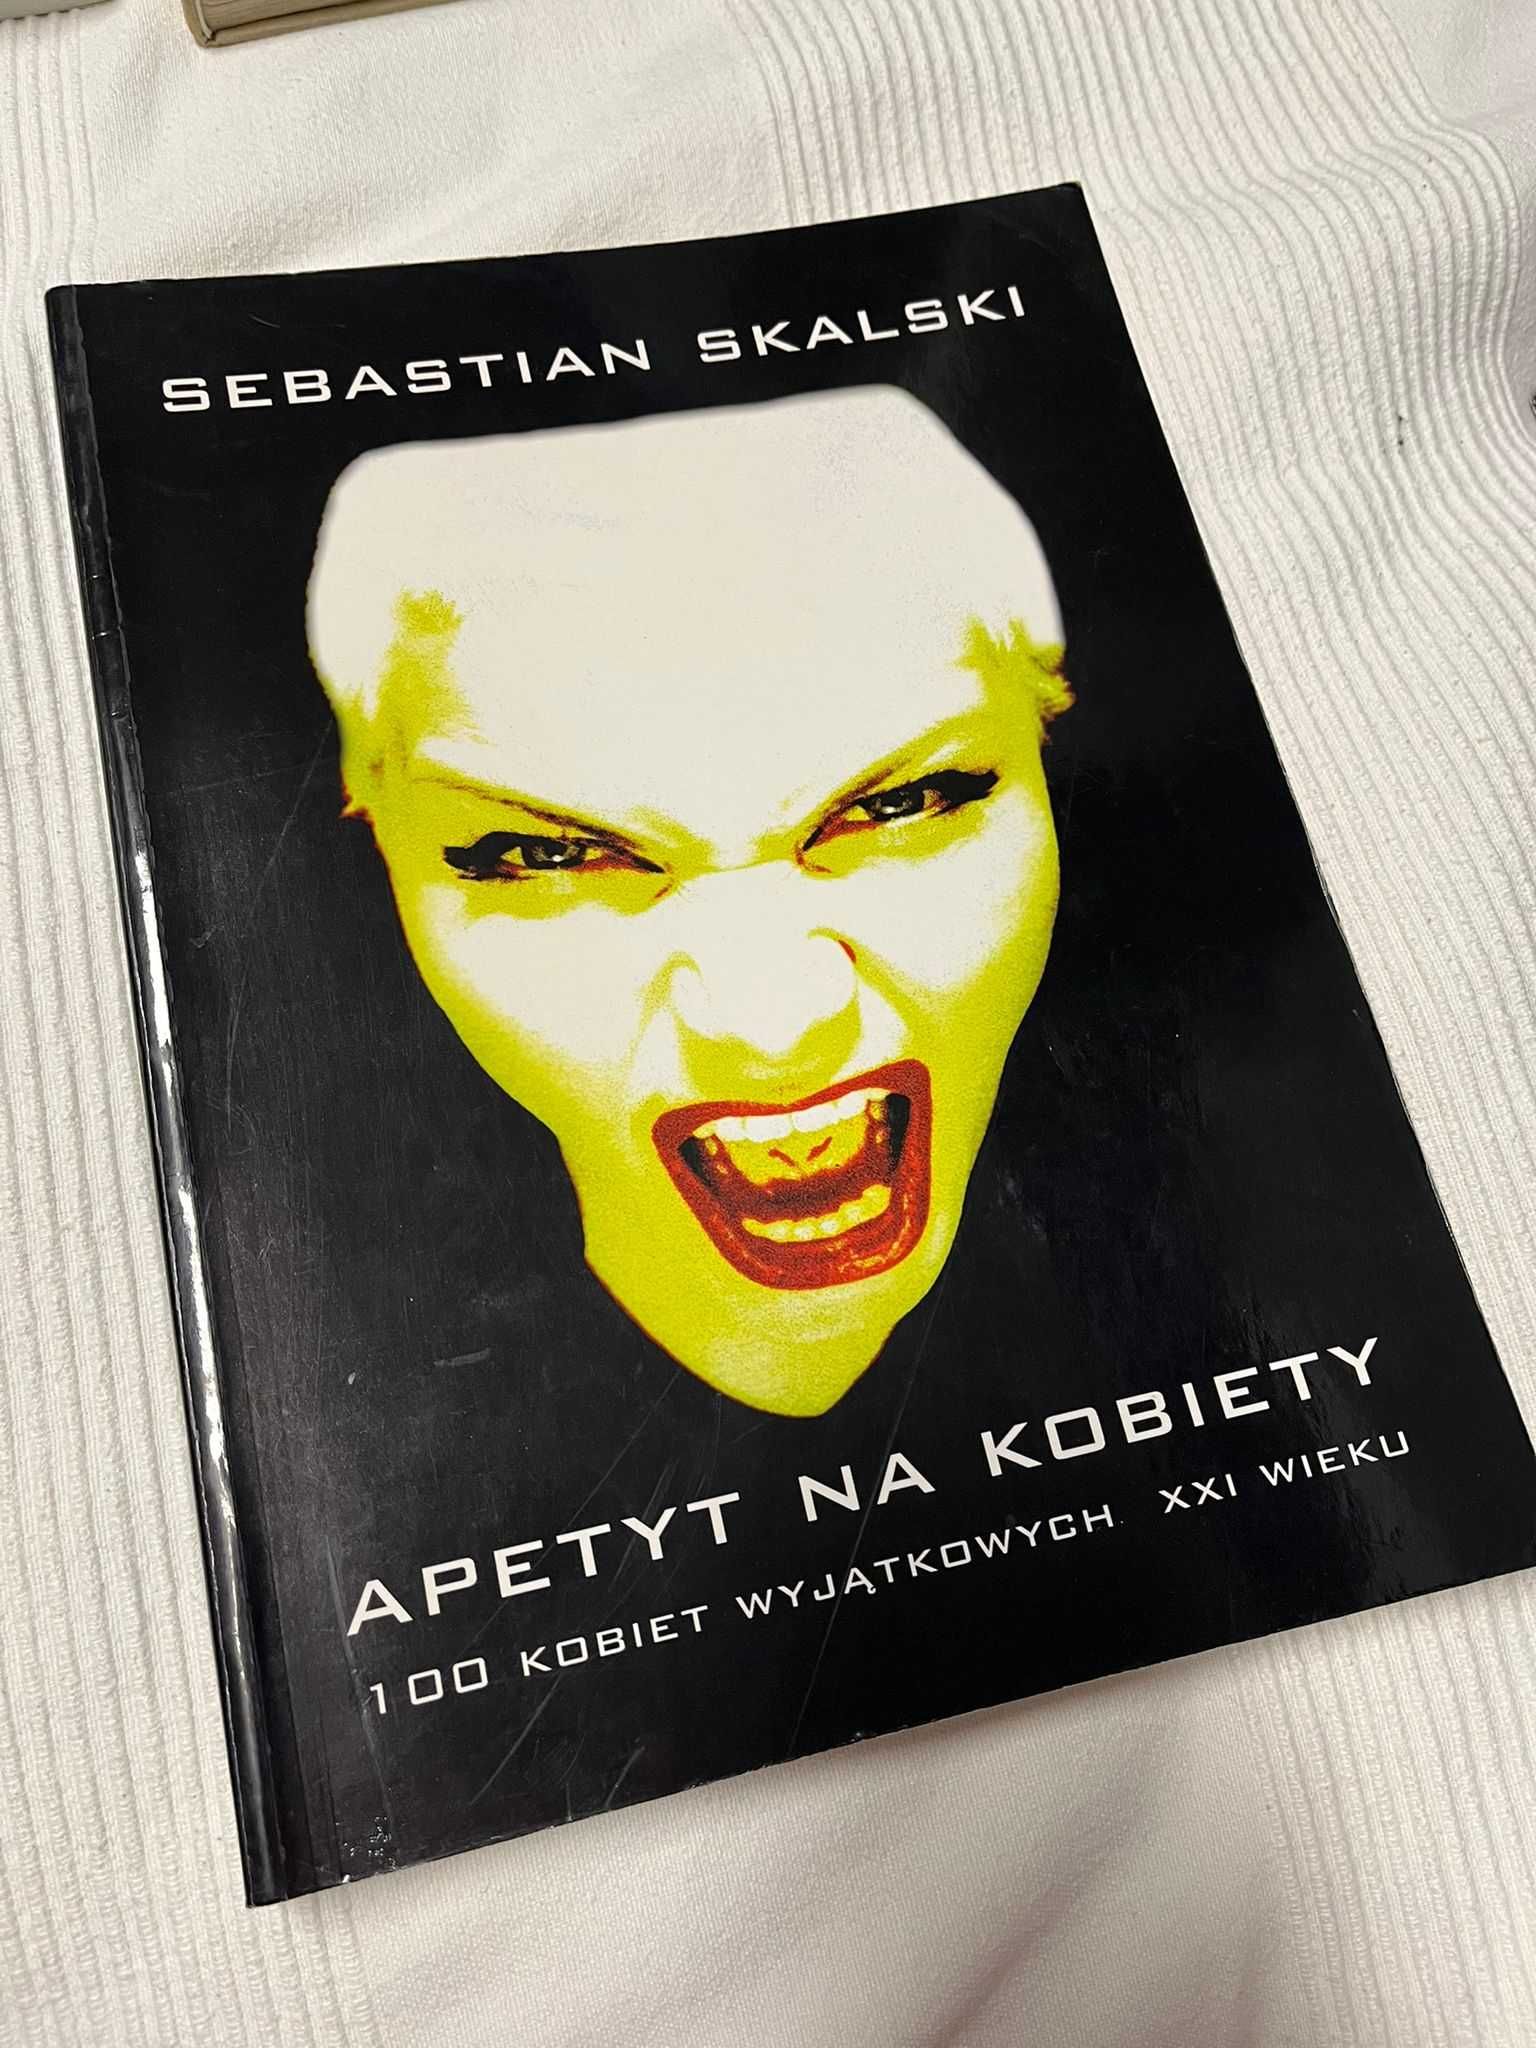 Apetyt na kobiety 100 kobiet wyjątkowych XXI wieku Sebastian Skalski